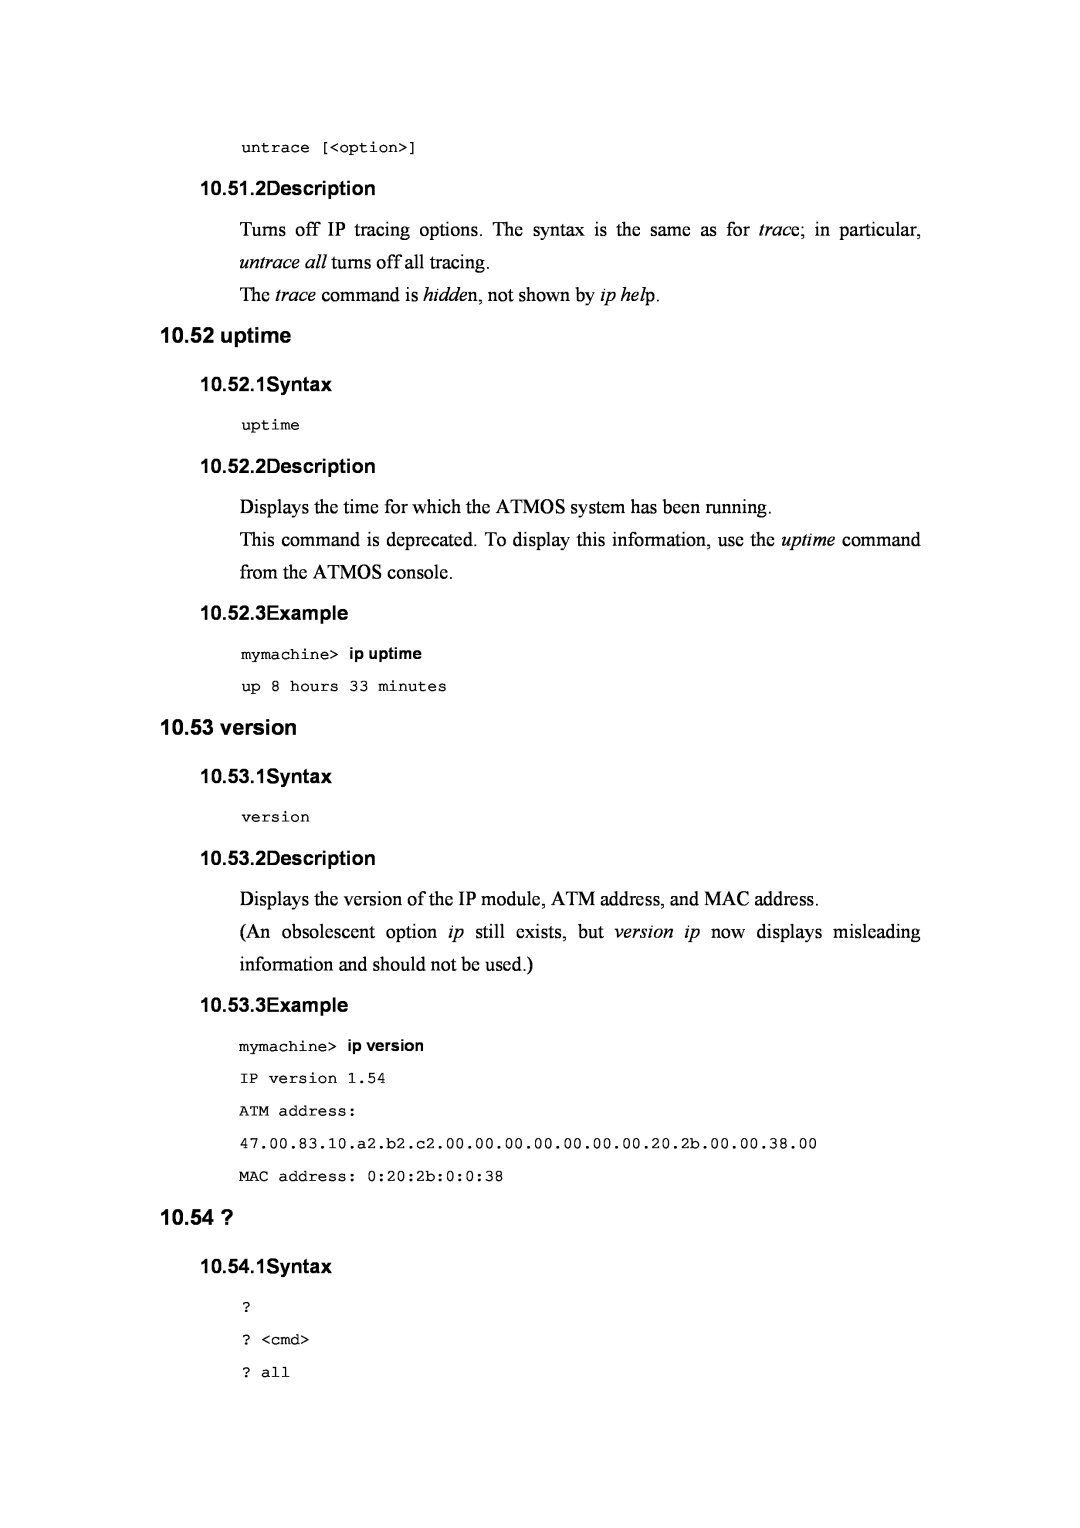 Atlantis Land A02-RA(Atmos)_ME01 manual uptime, version, 10.54 ?, 10.51.2Description, 10.52.1Syntax, 10.52.2Description 